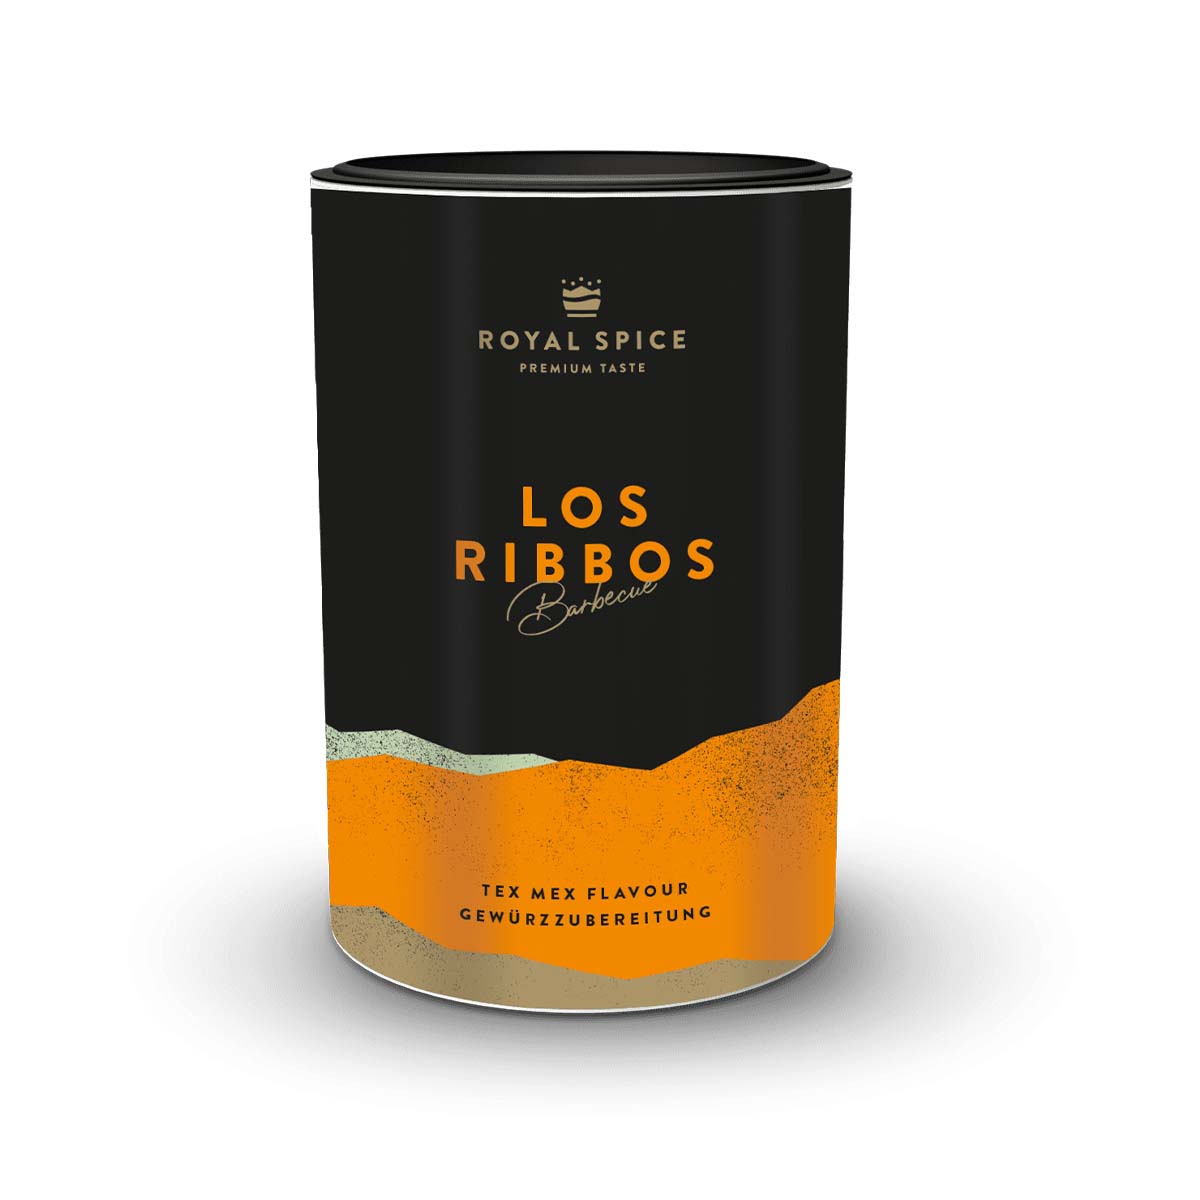 Royal Spice Los Ribbos, 300 g